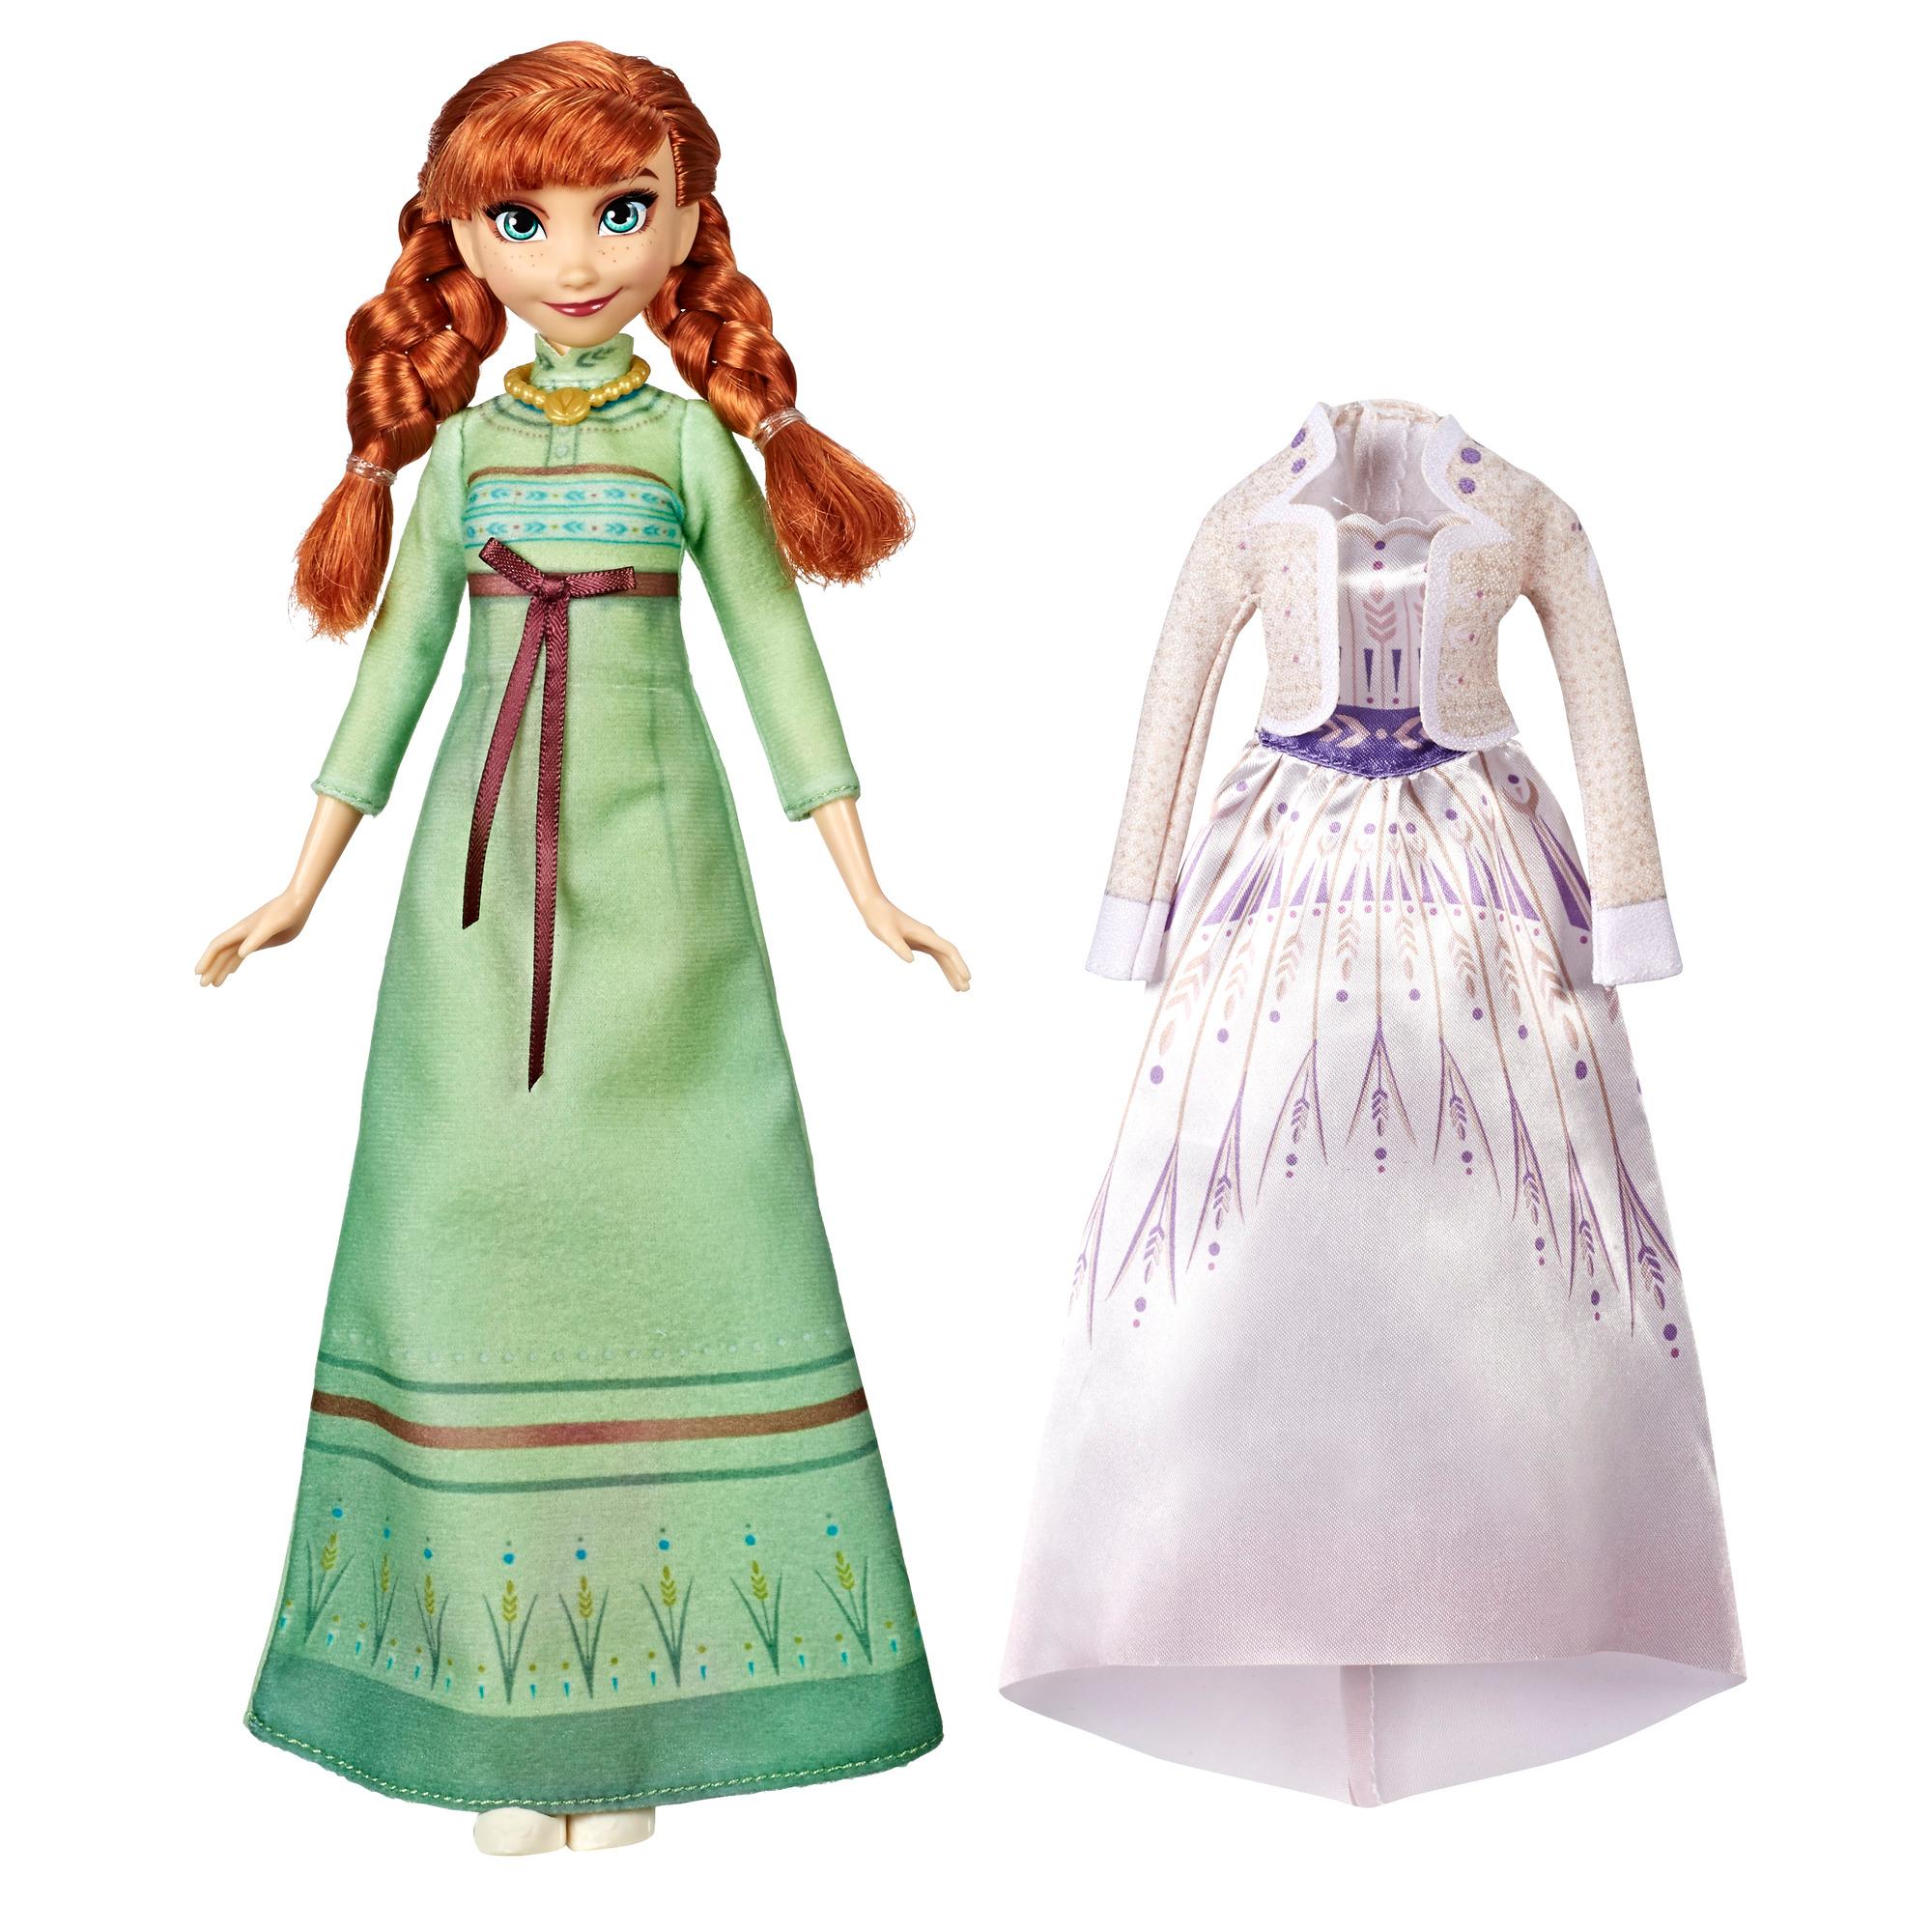 2014 Disney Frozen Elsa of Arendelle Doll 3 Girls for sale online 